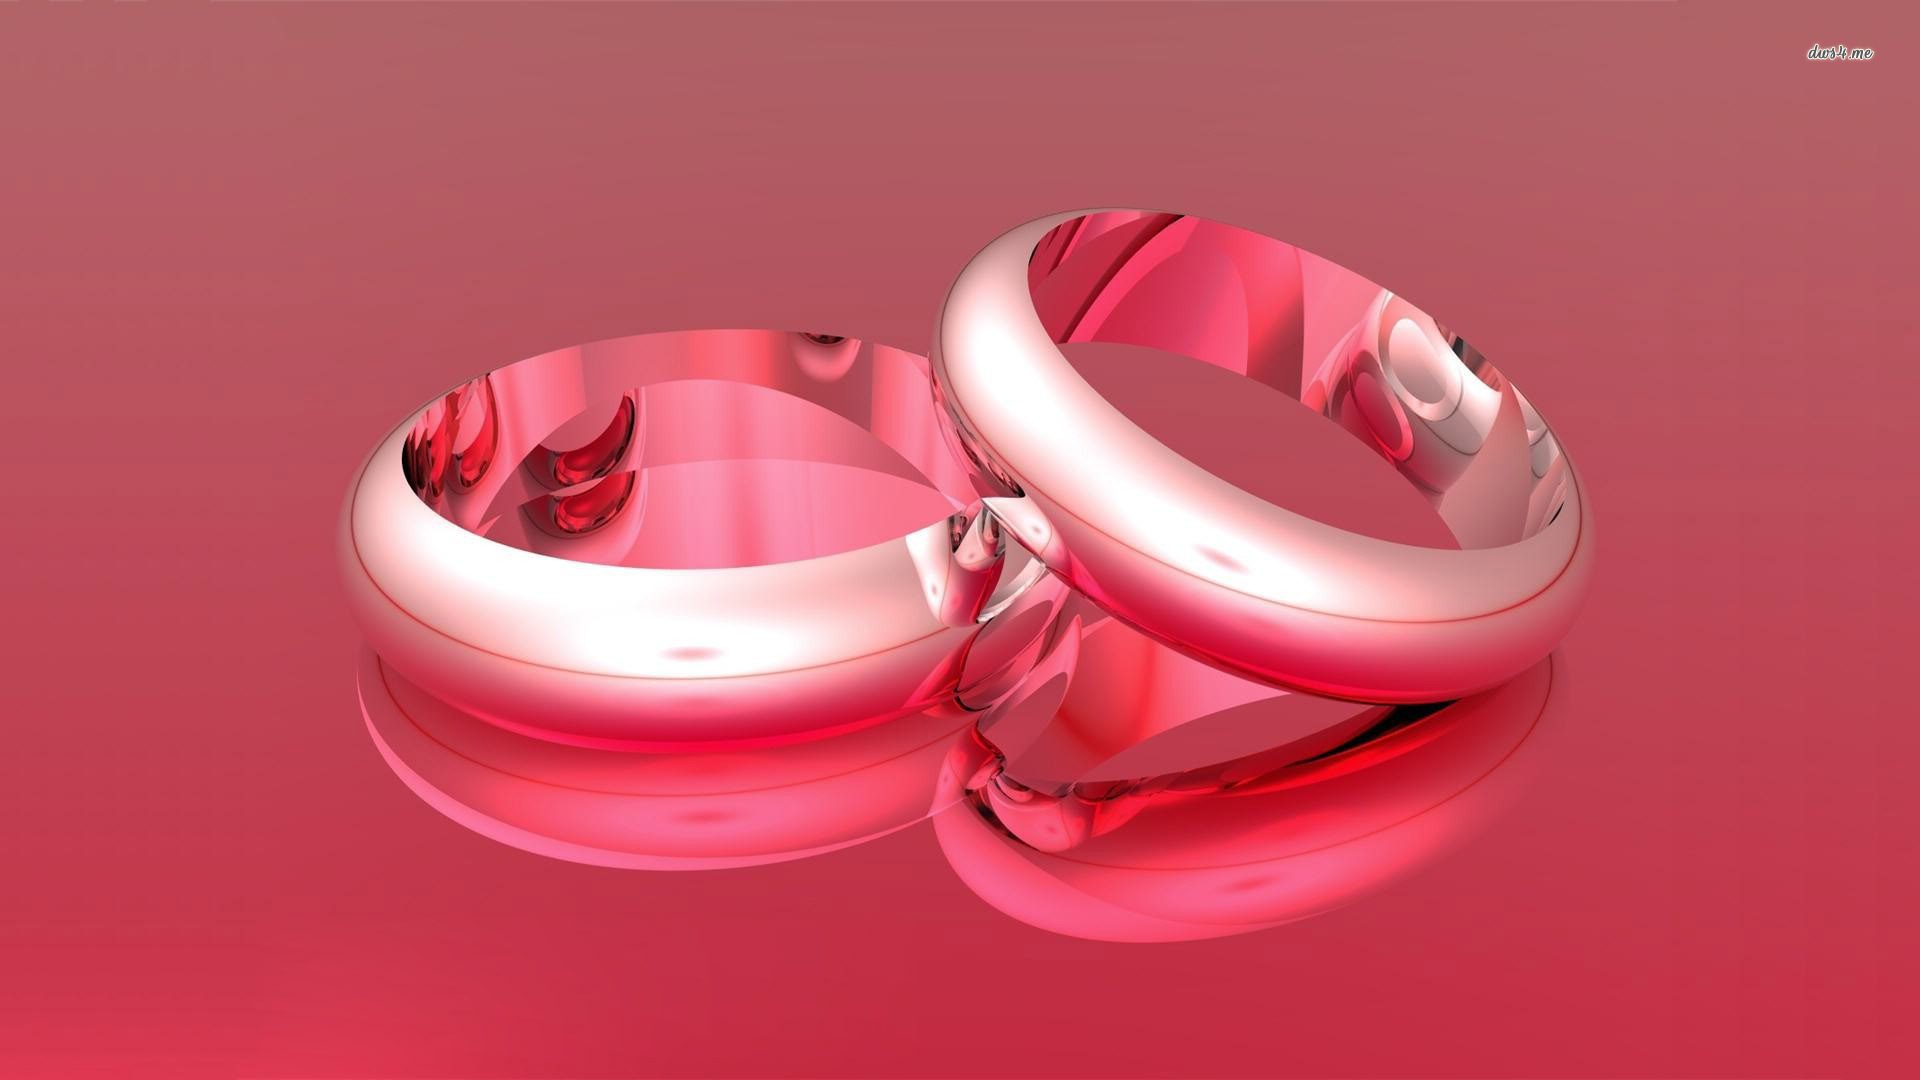 リング壁紙hd,リング,ピンク,製品,結婚指輪,婚約指輪